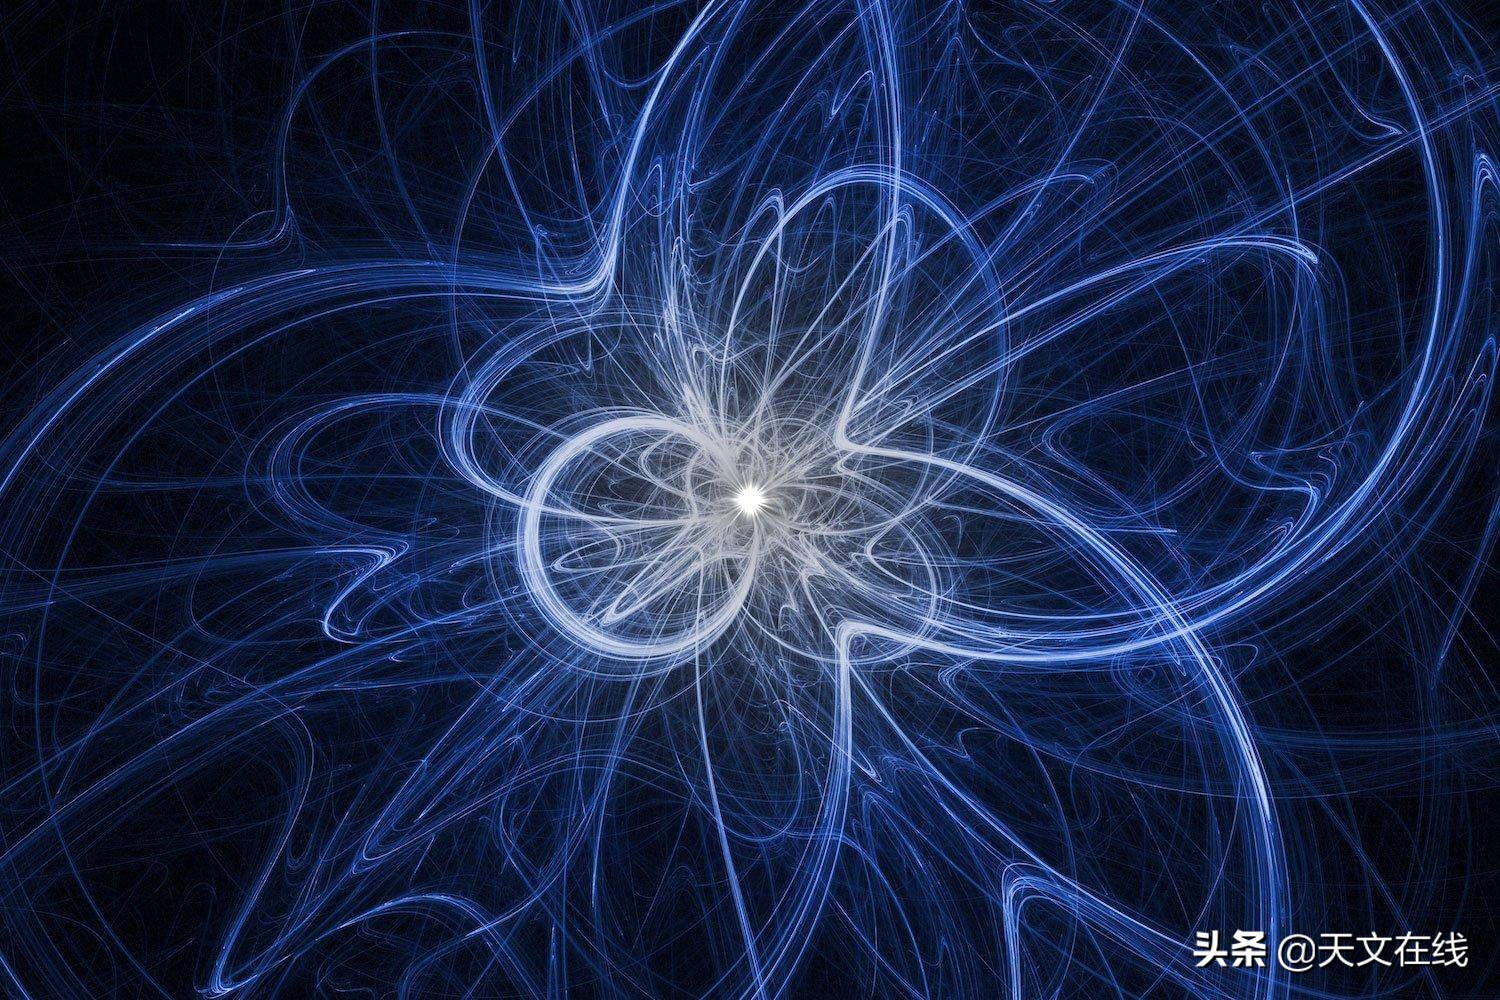 宇宙中粒子众多，中微子缘何重要？